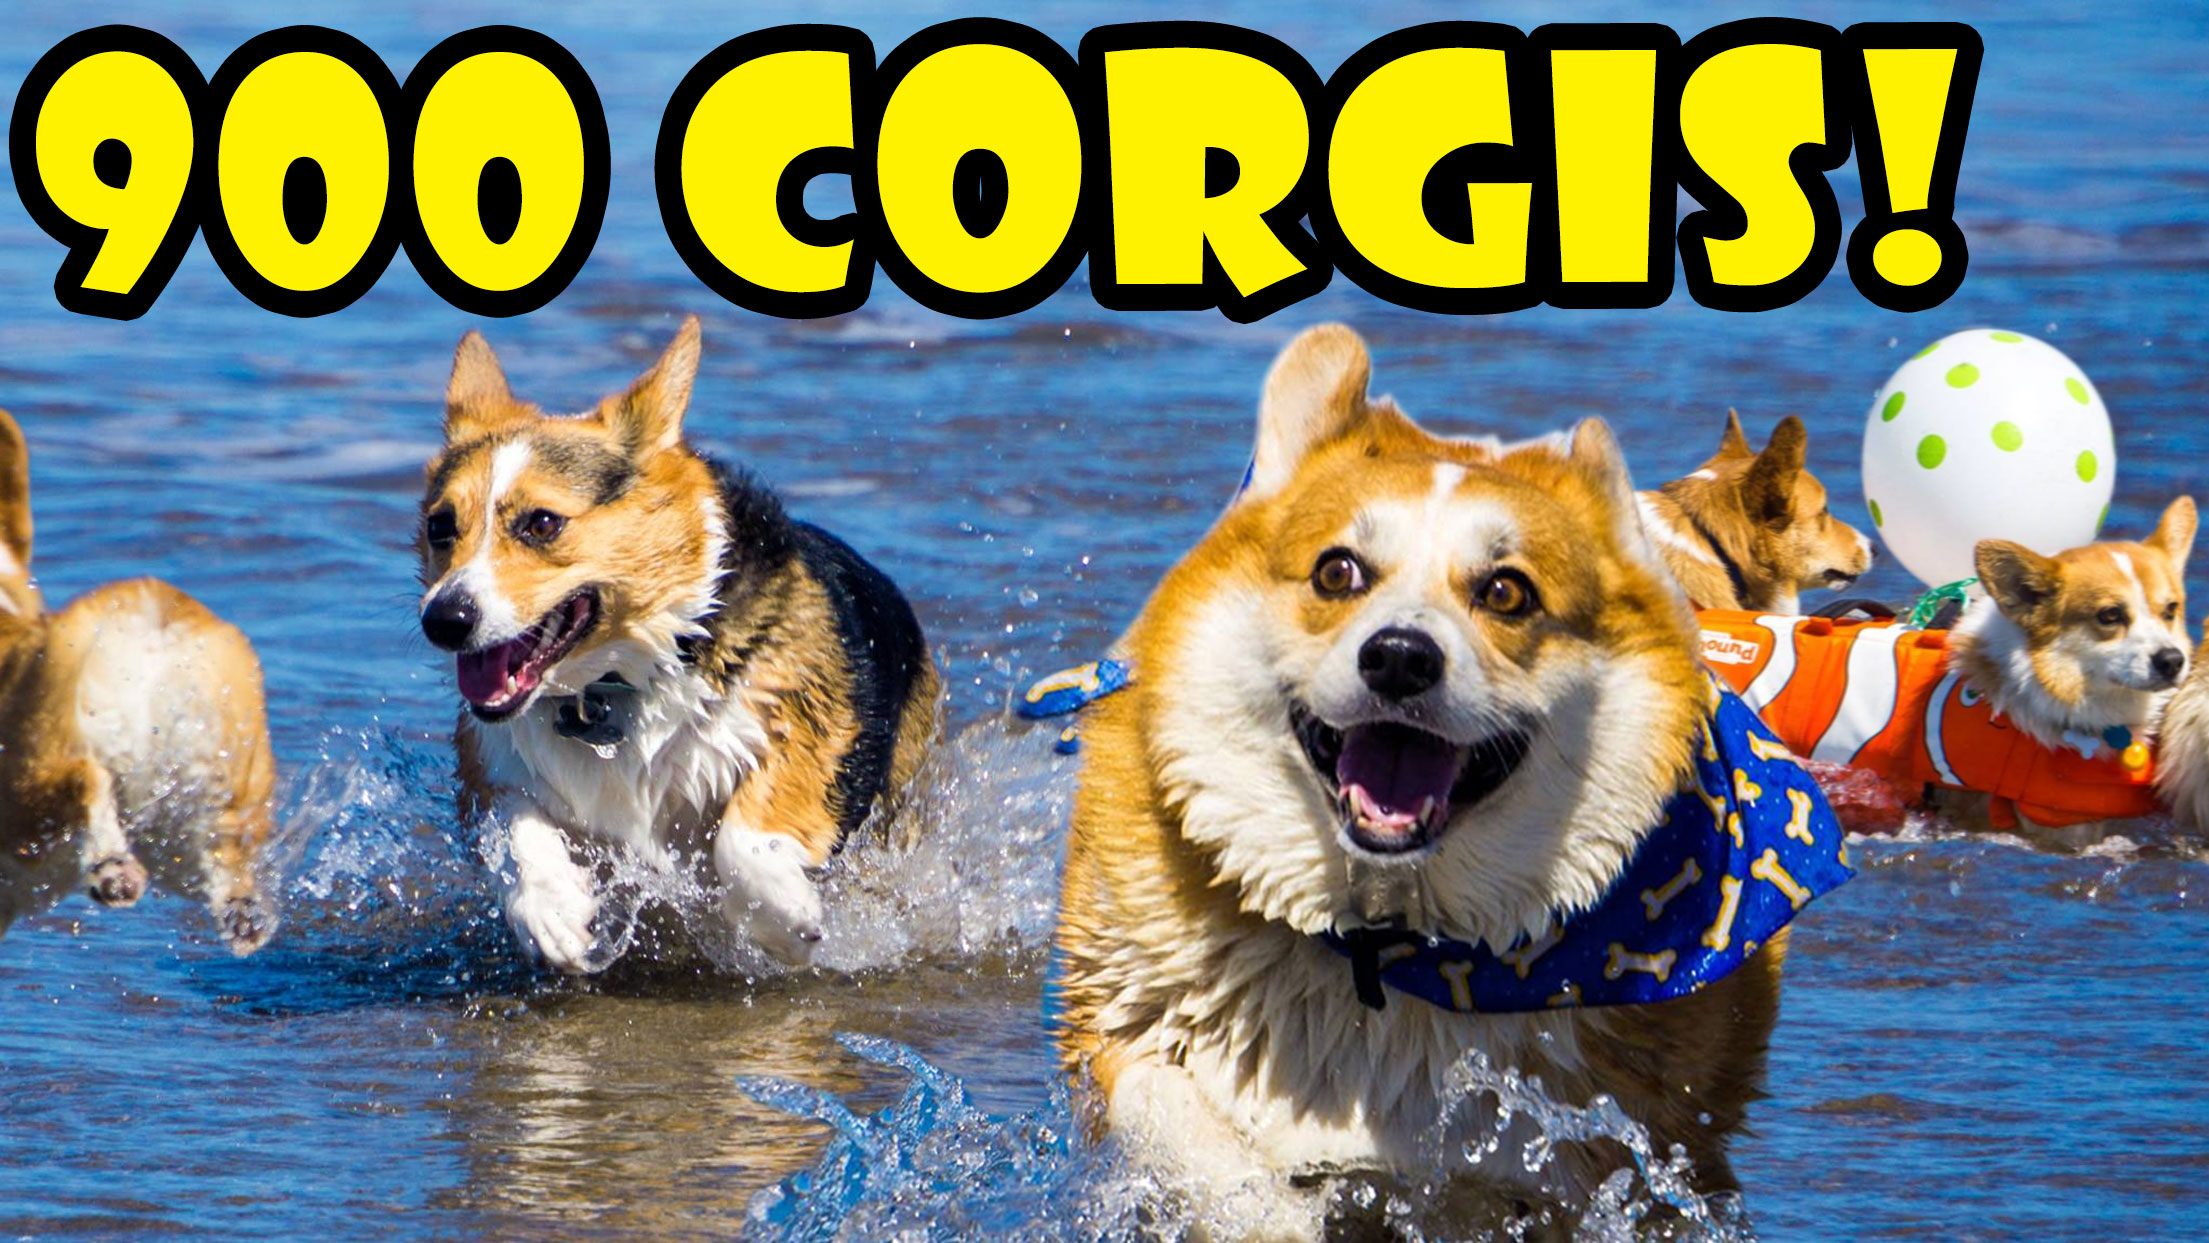 900 CORGIS ON A BEACH - FULL DAY @ CORGI CON